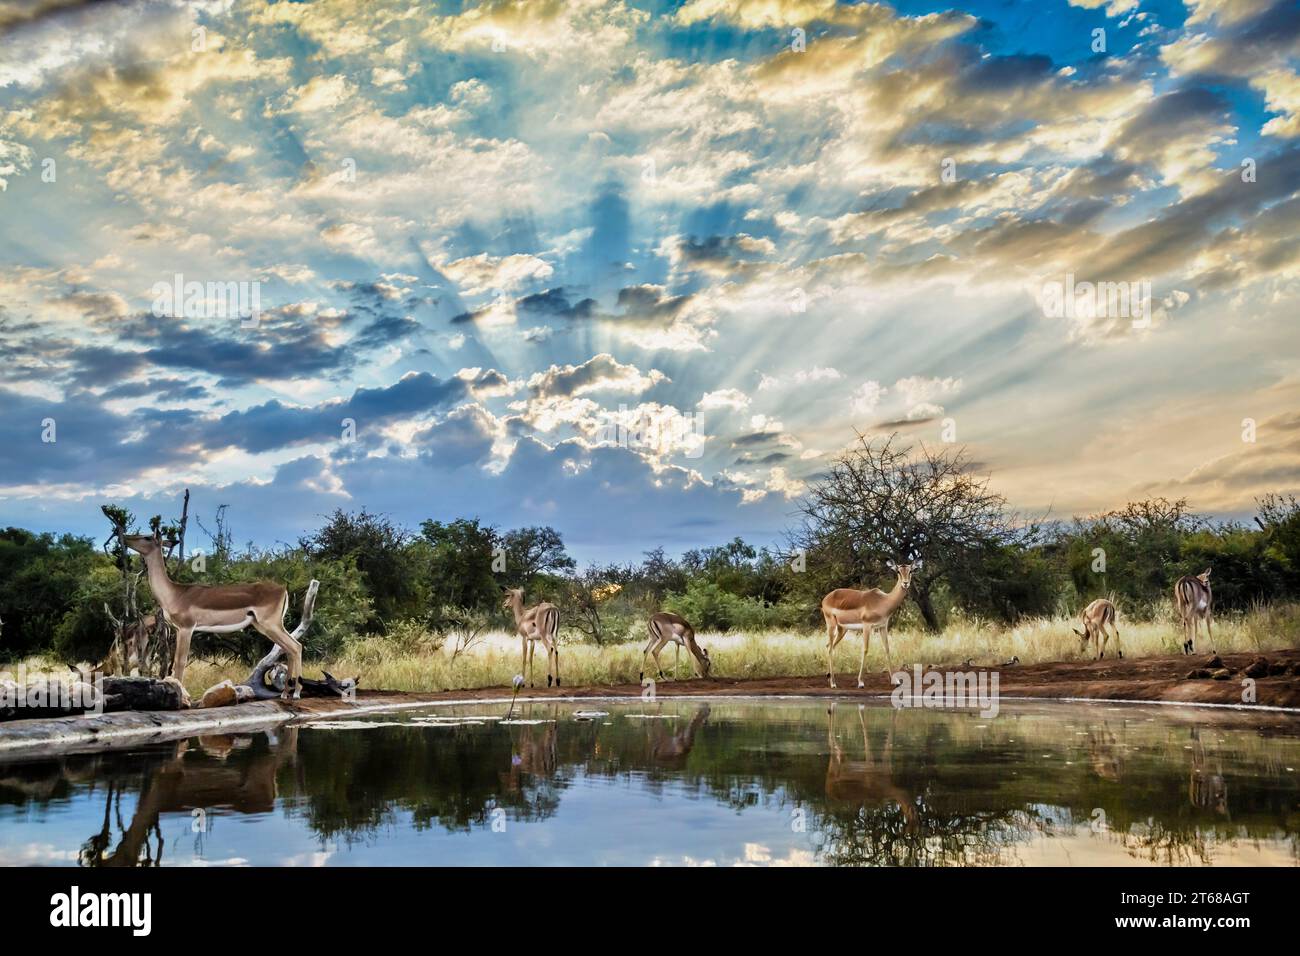 Groupe commun d'Impala dans le paysage de trou d'eau avec ciel nuageux dans le parc national Kruger, Afrique du Sud ; espèce Aepyceros melampus famille de Bovidés Banque D'Images